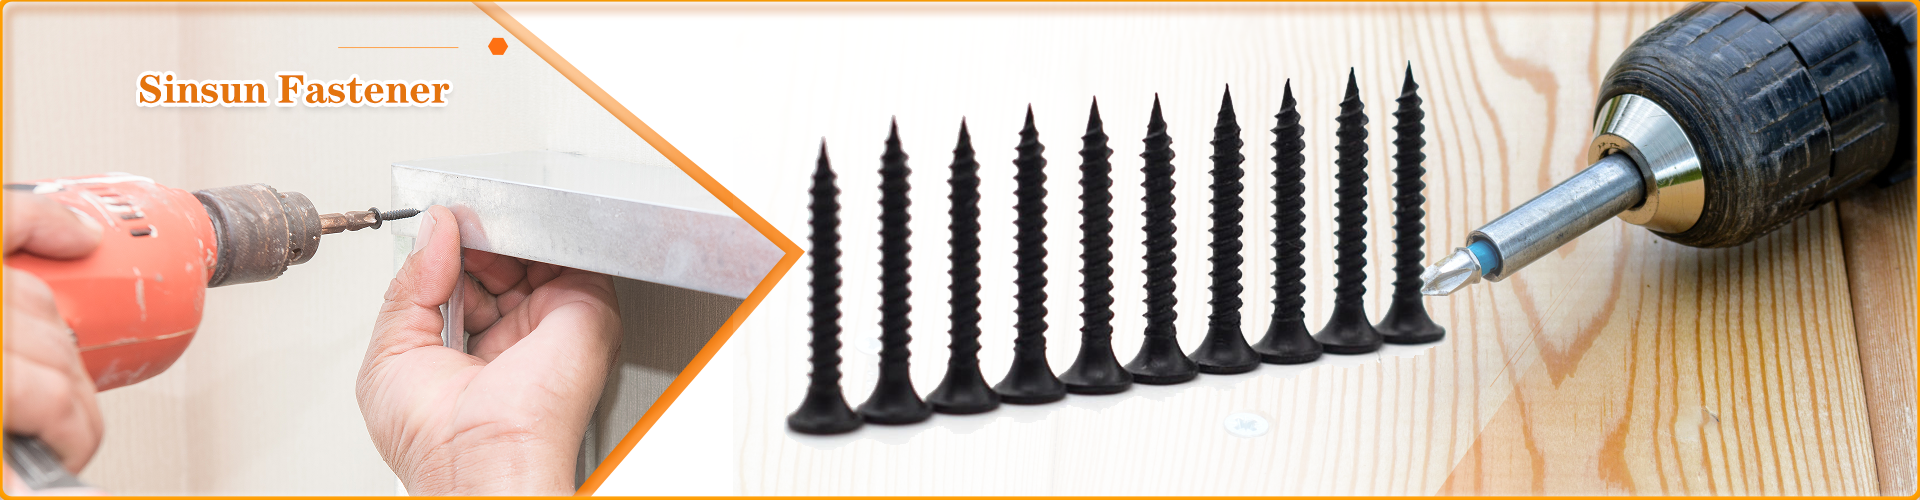 Drywall screws with black phosphate coating